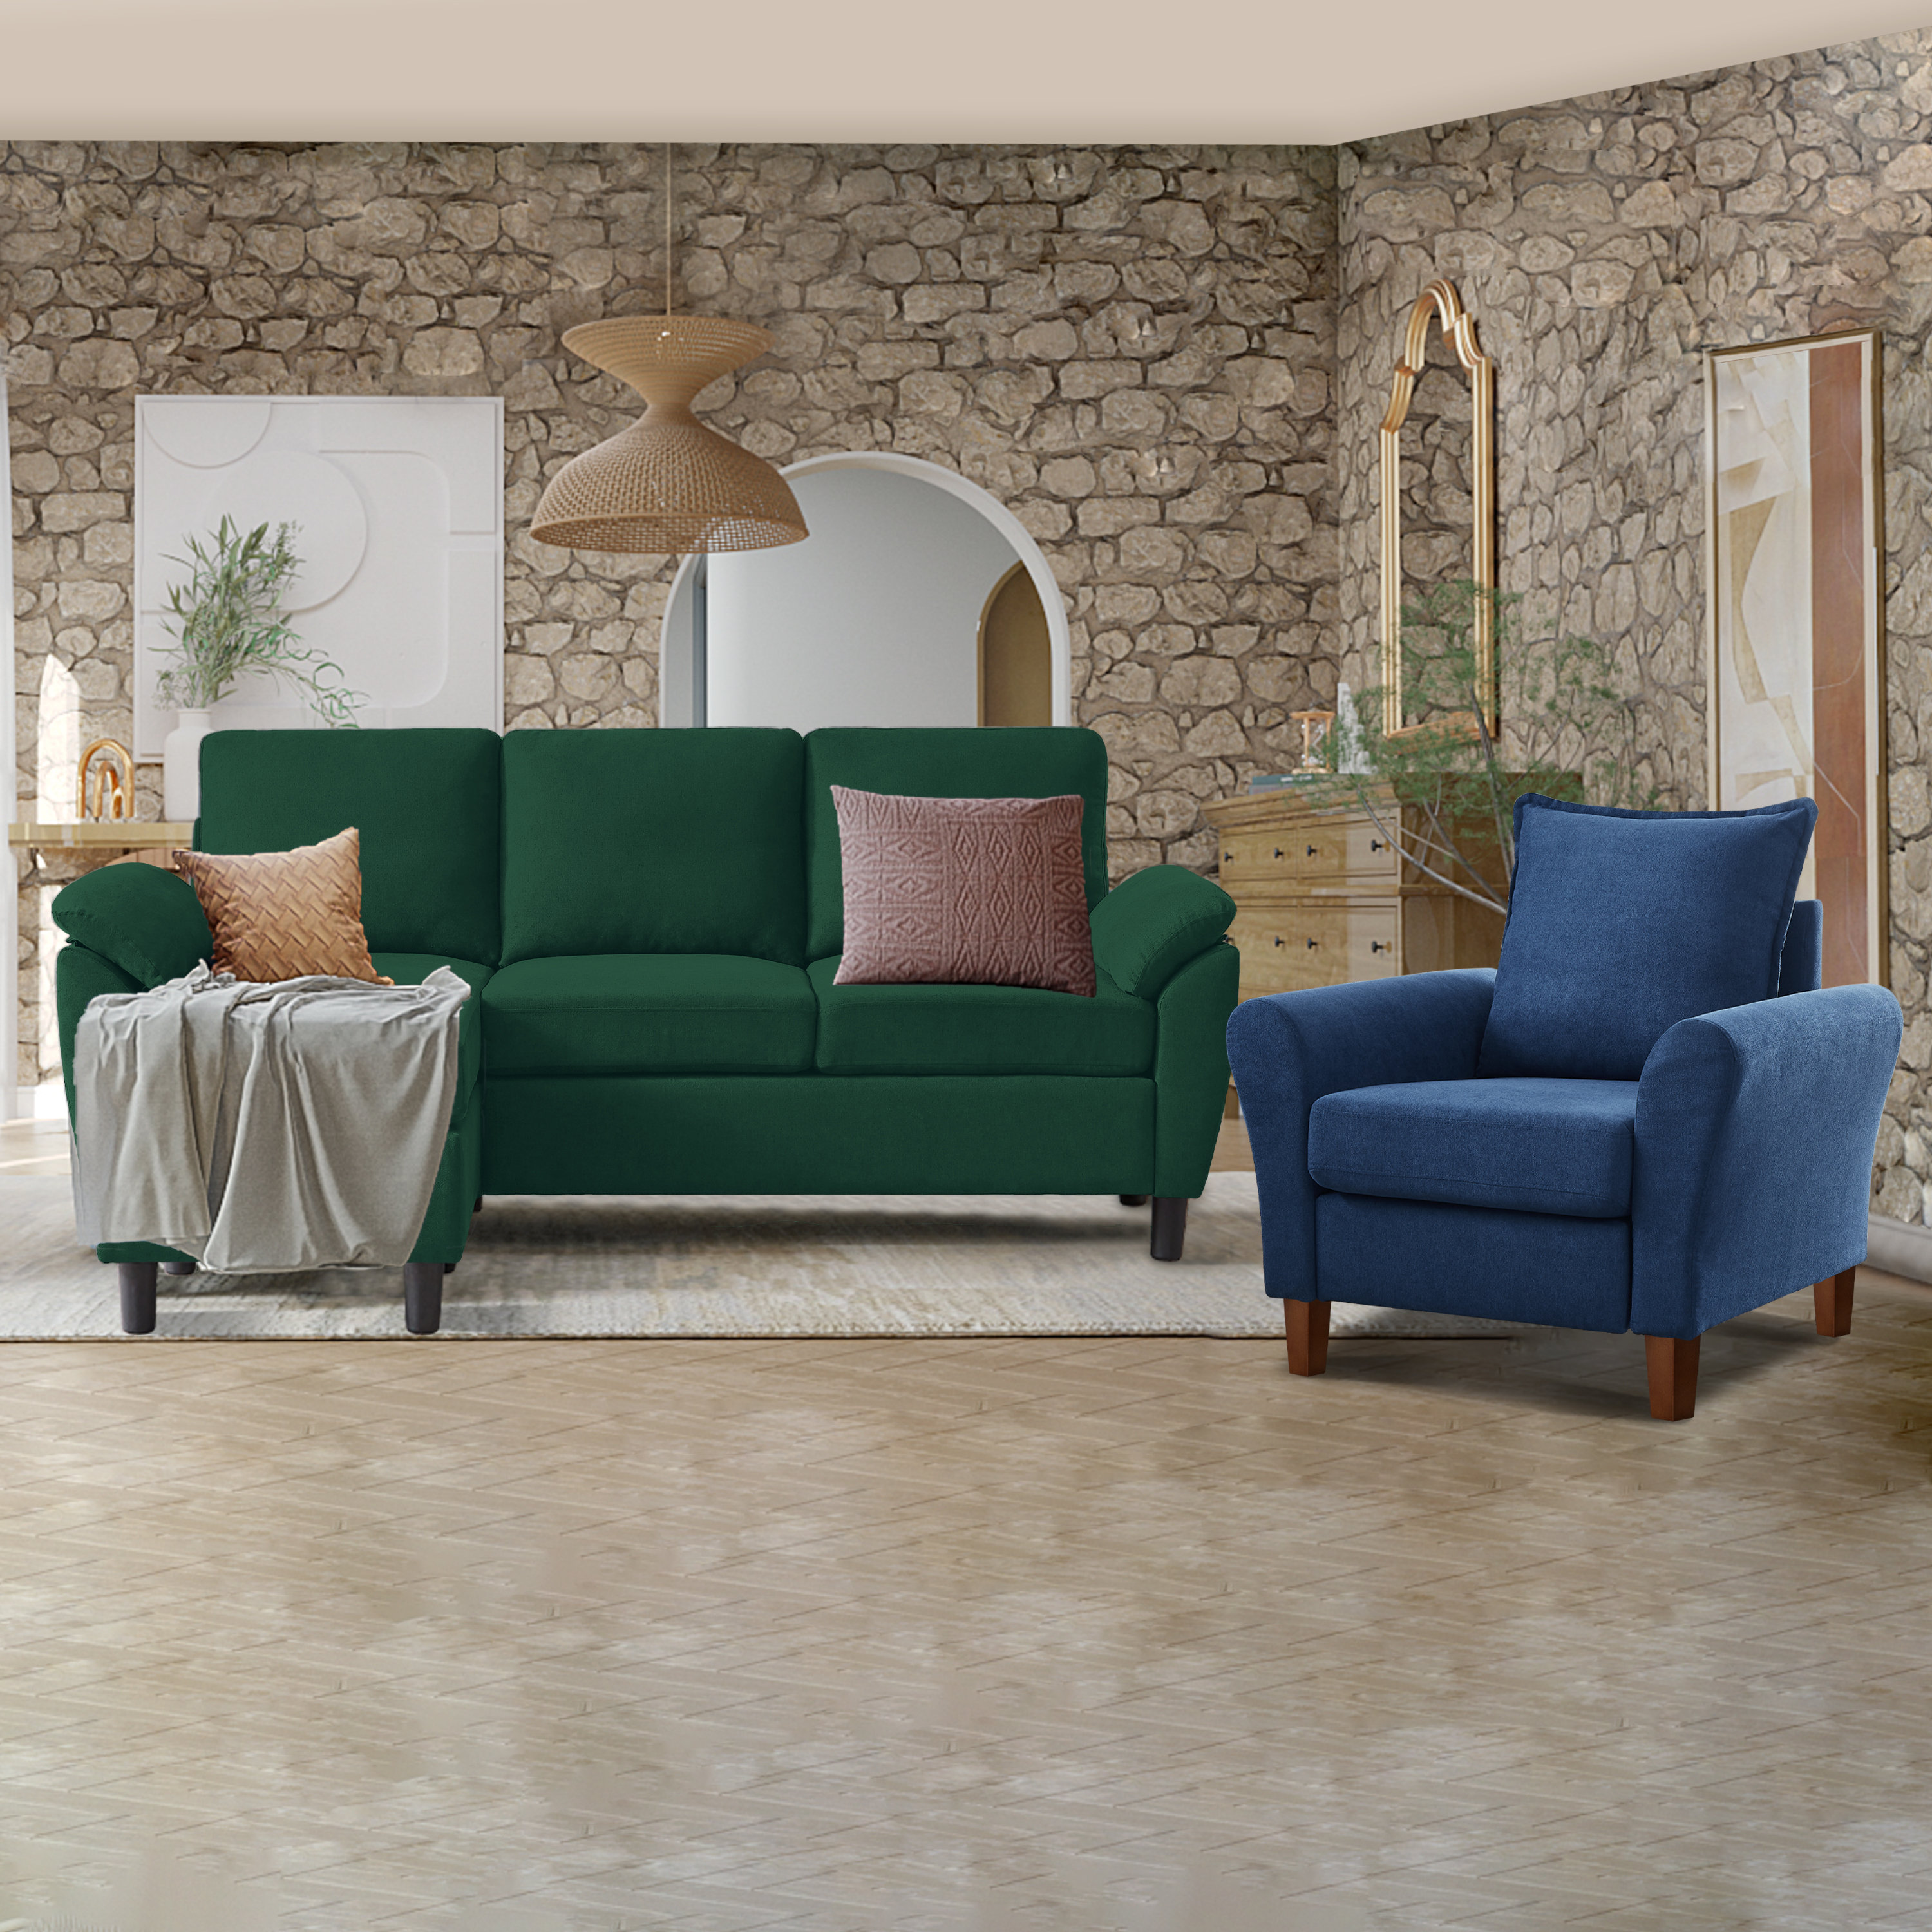 Sofa 1080P, 2K, 4K, 5K HD wallpapers free download | Wallpaper Flare